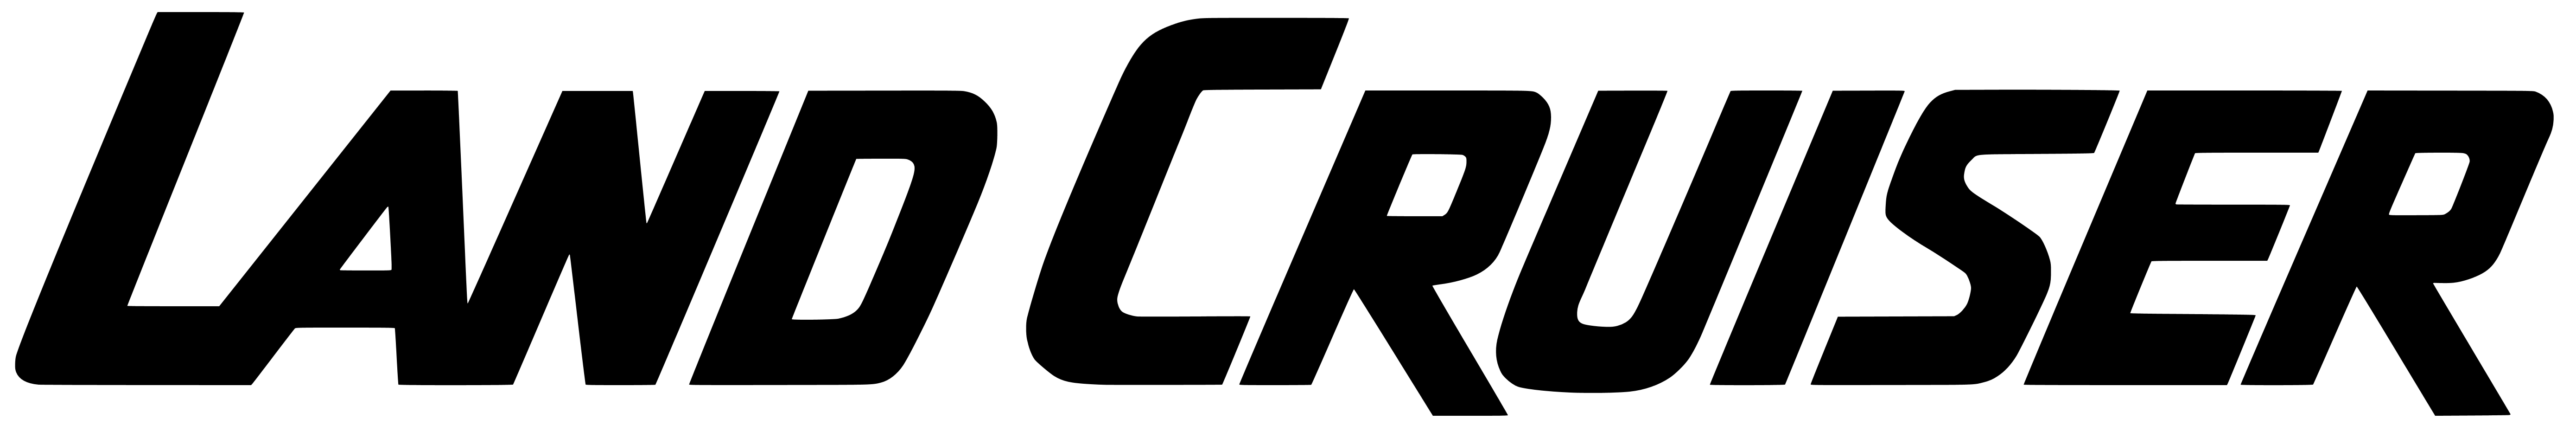 Cruiser Logo - Land Cruiser Logo | IH8MUD Forum